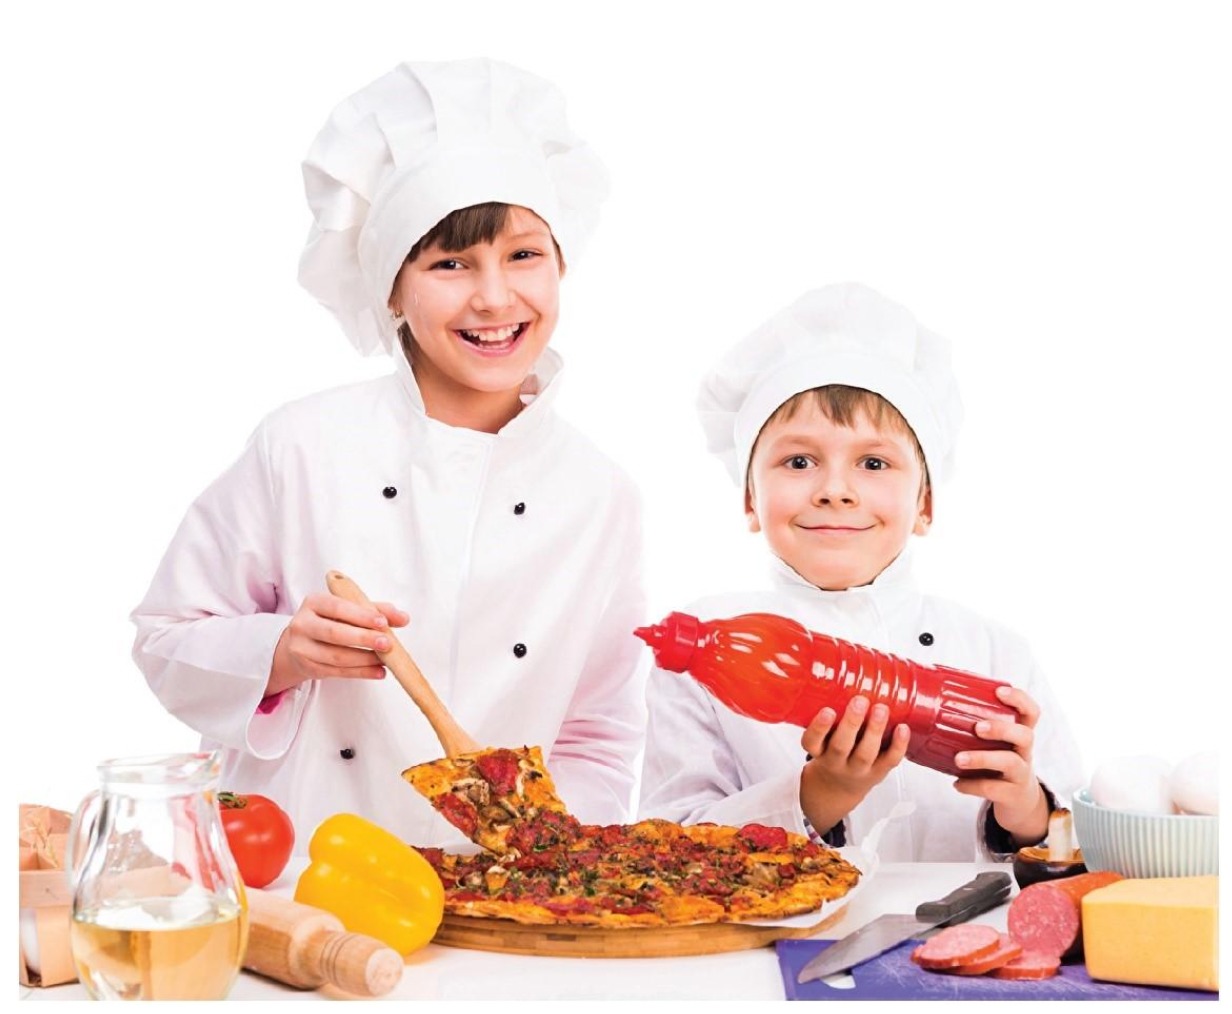 دروس للطهاة الصغار